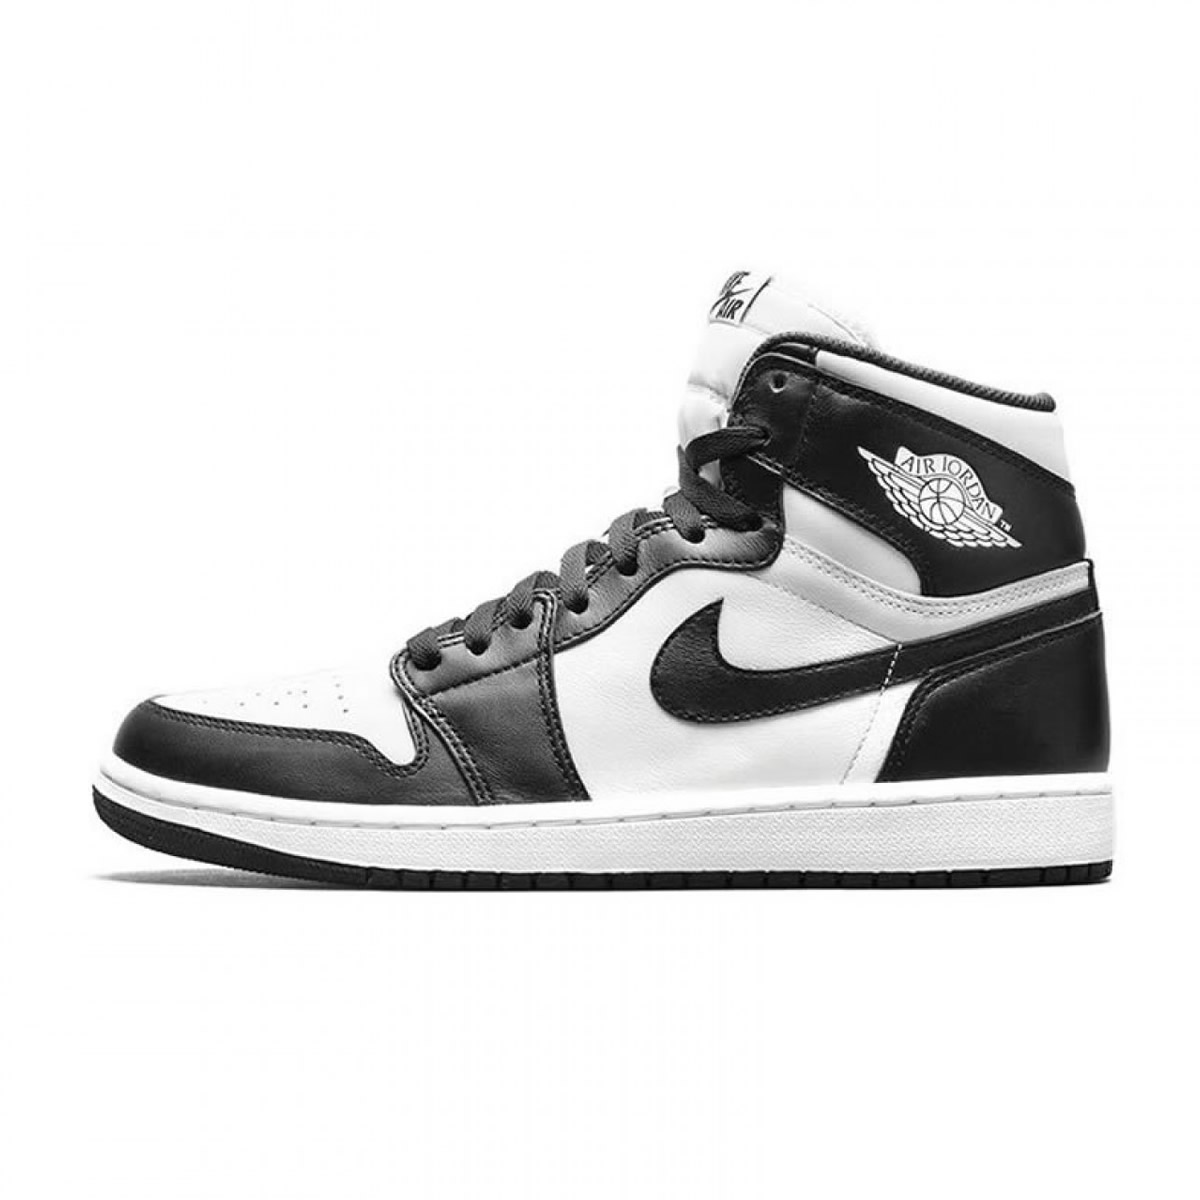 Nike Air Jordan 1 Retro High Og Oreo Black White 555088 010 1 - kickbulk.co